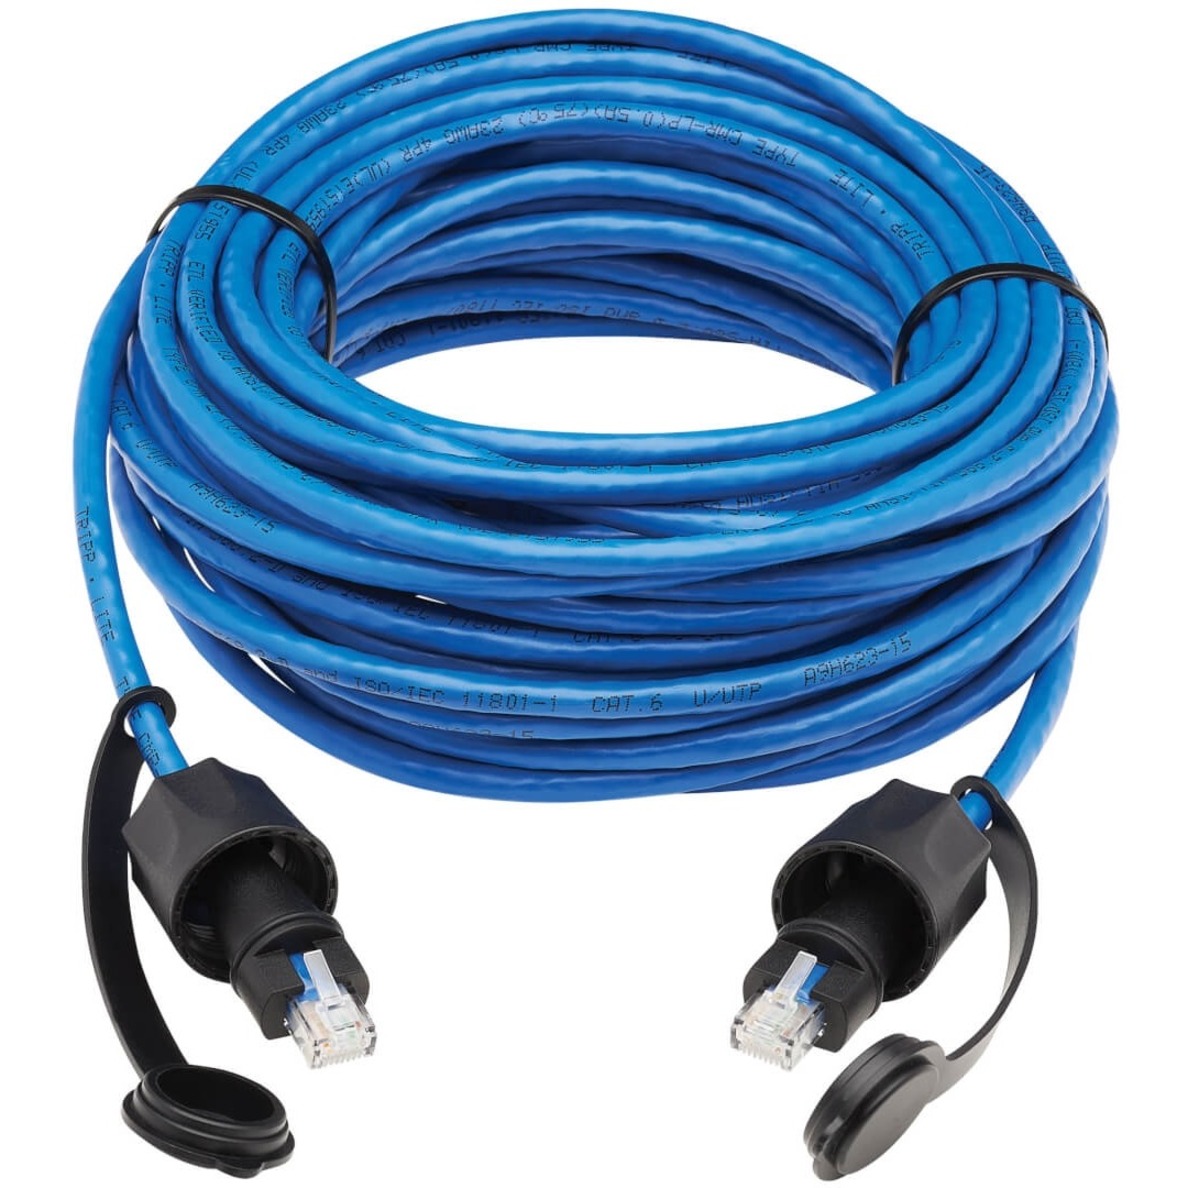 Eaton Tripp Lite Series Industrial Cat6 UTP Ethernet Cable (RJ45 M/M), 100W PoE, CMR-LP, IP68, Blue, 50 ft. (15.24 m) - image 3 of 6